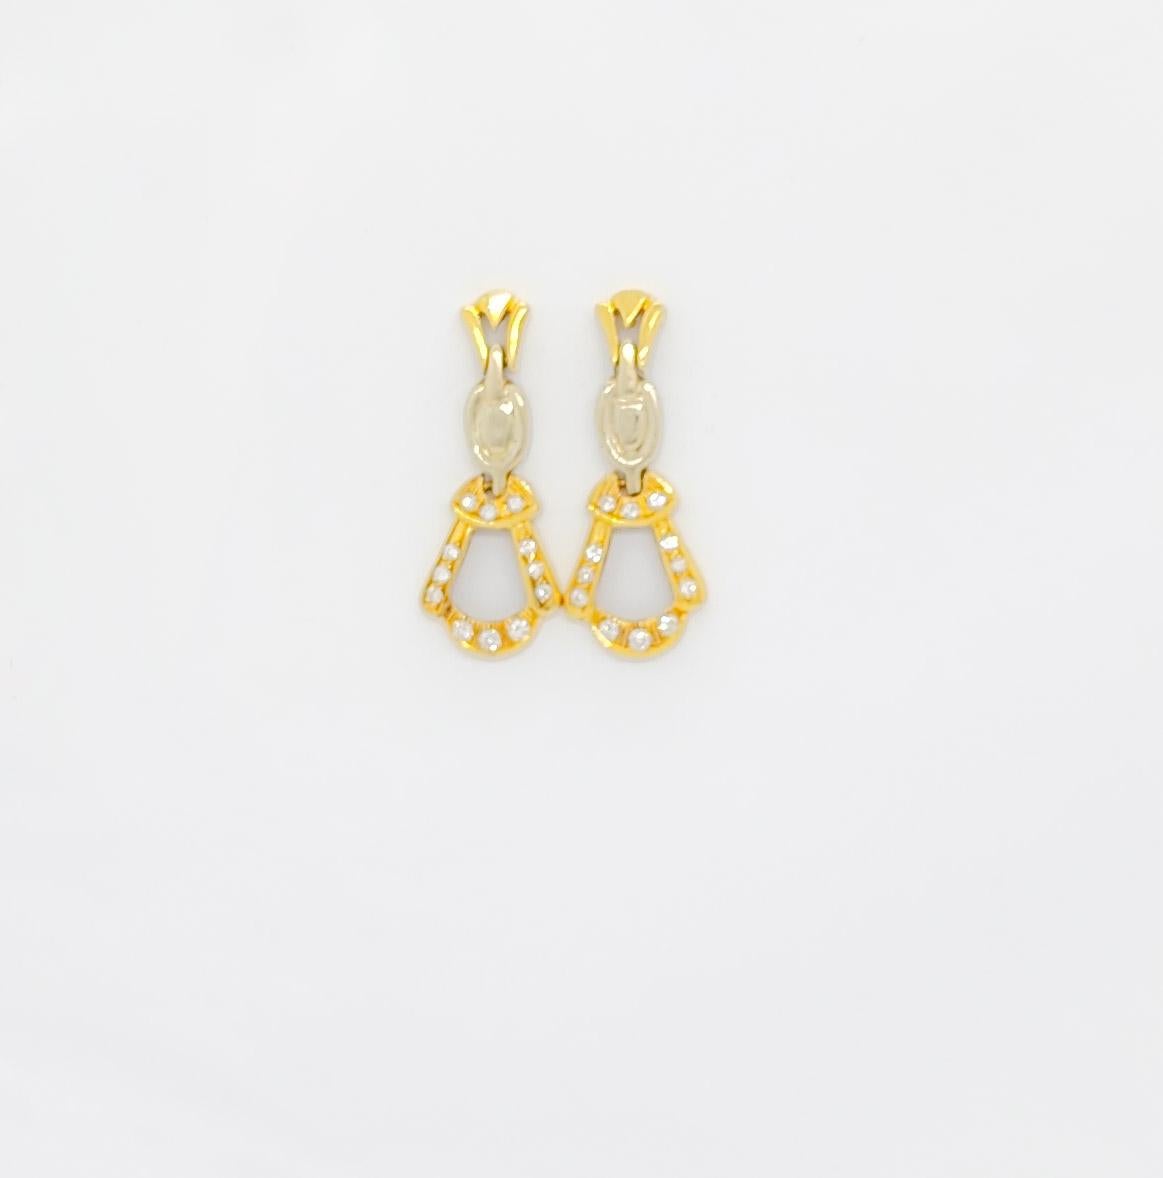 Magnifiques boucles d'oreilles pendantes avec 0.20 ct. de diamants blancs ronds de bonne qualité.  Fabriqué à la main en or jaune 18k.